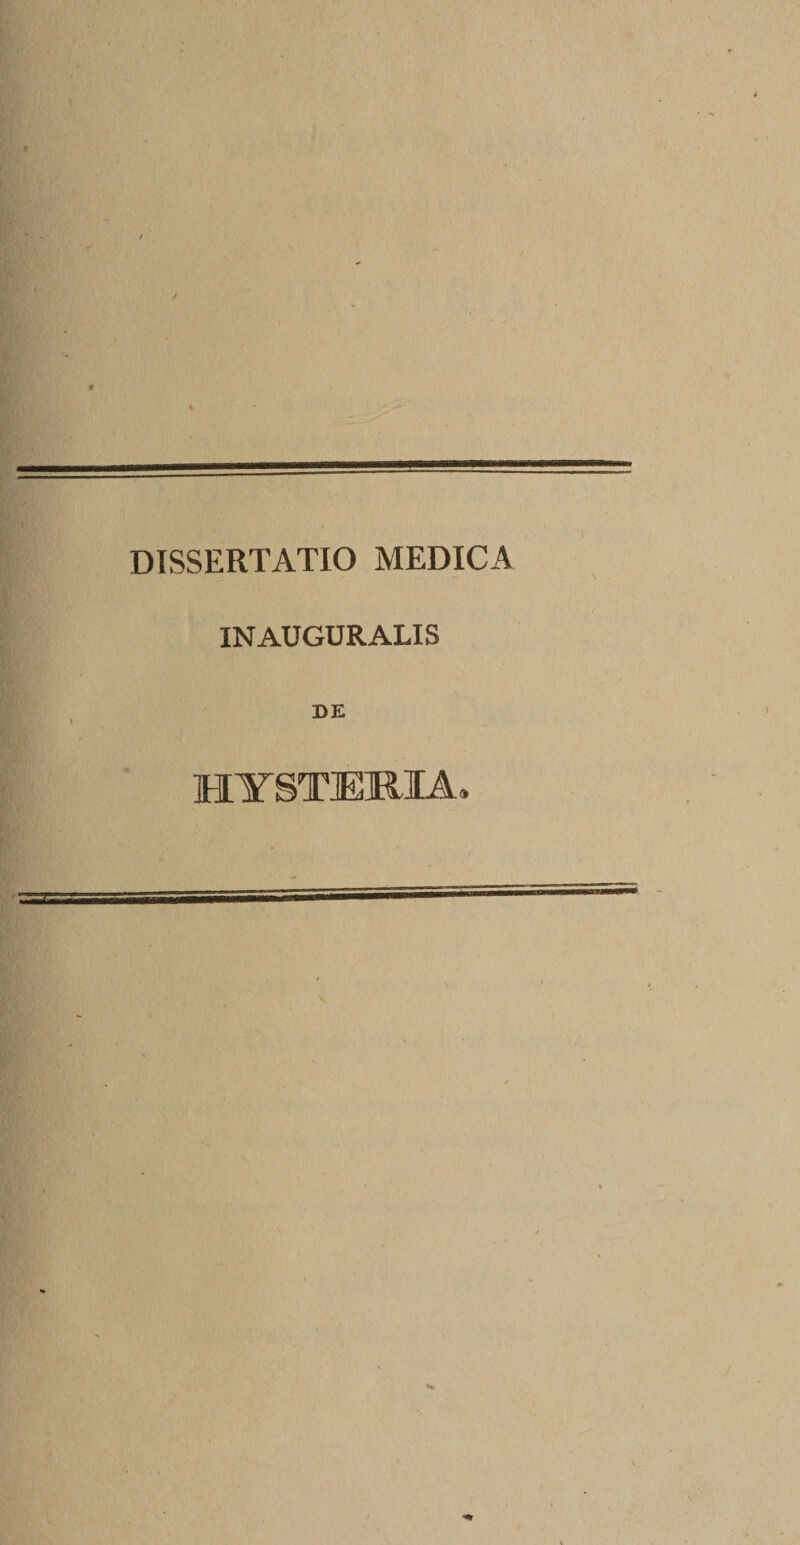 DISSERTATIO MEDICA INAUGURALIS DE MYSTERIA.